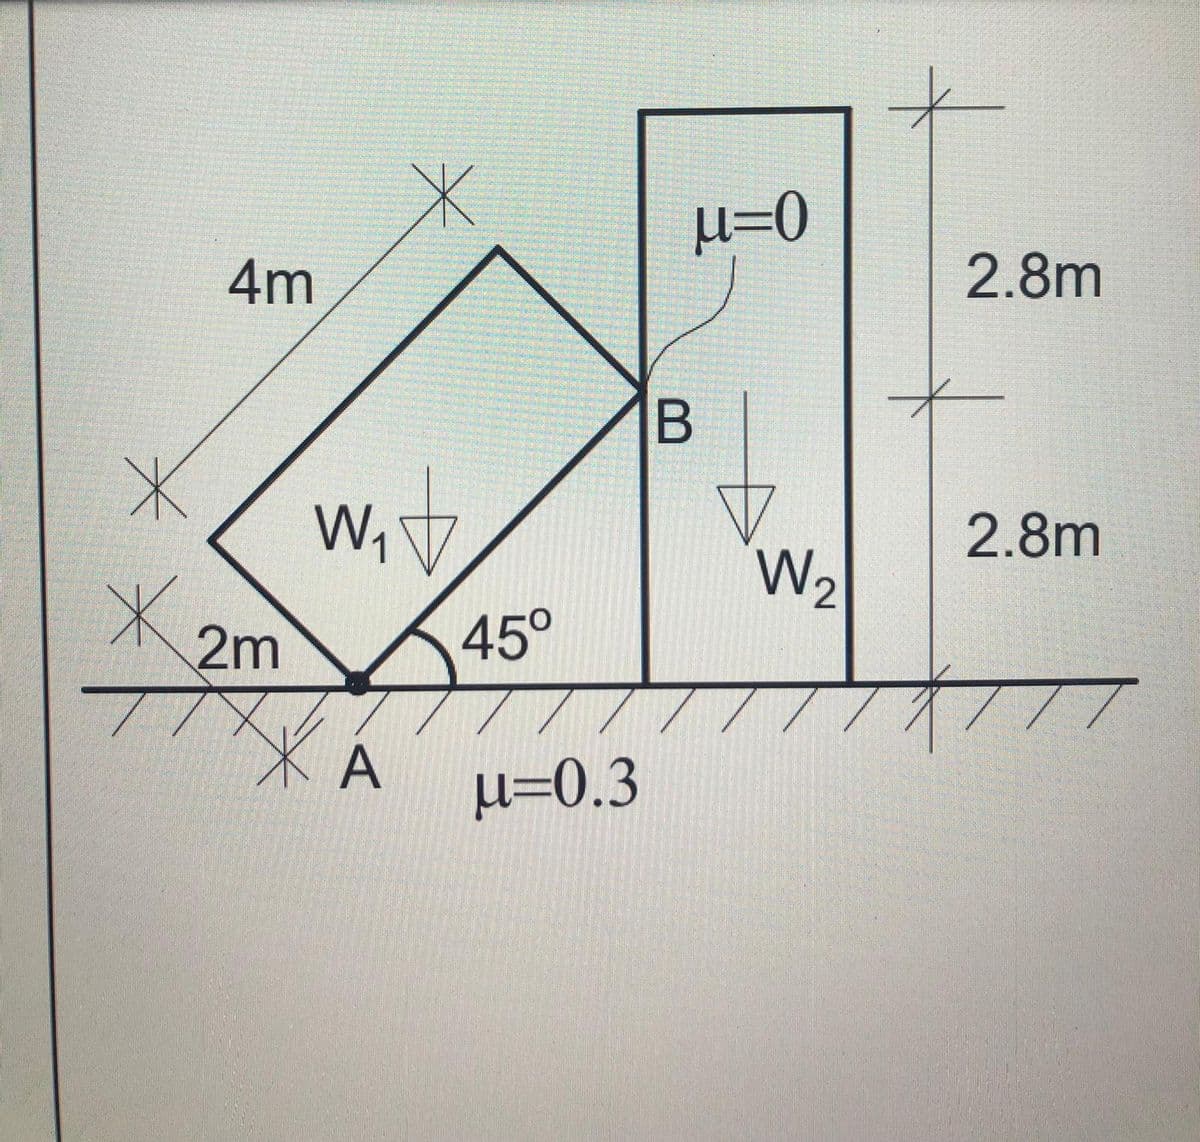 4m
2.8m
B
W,
2.8m
W,
2m
45°
X A
µ=0.3
